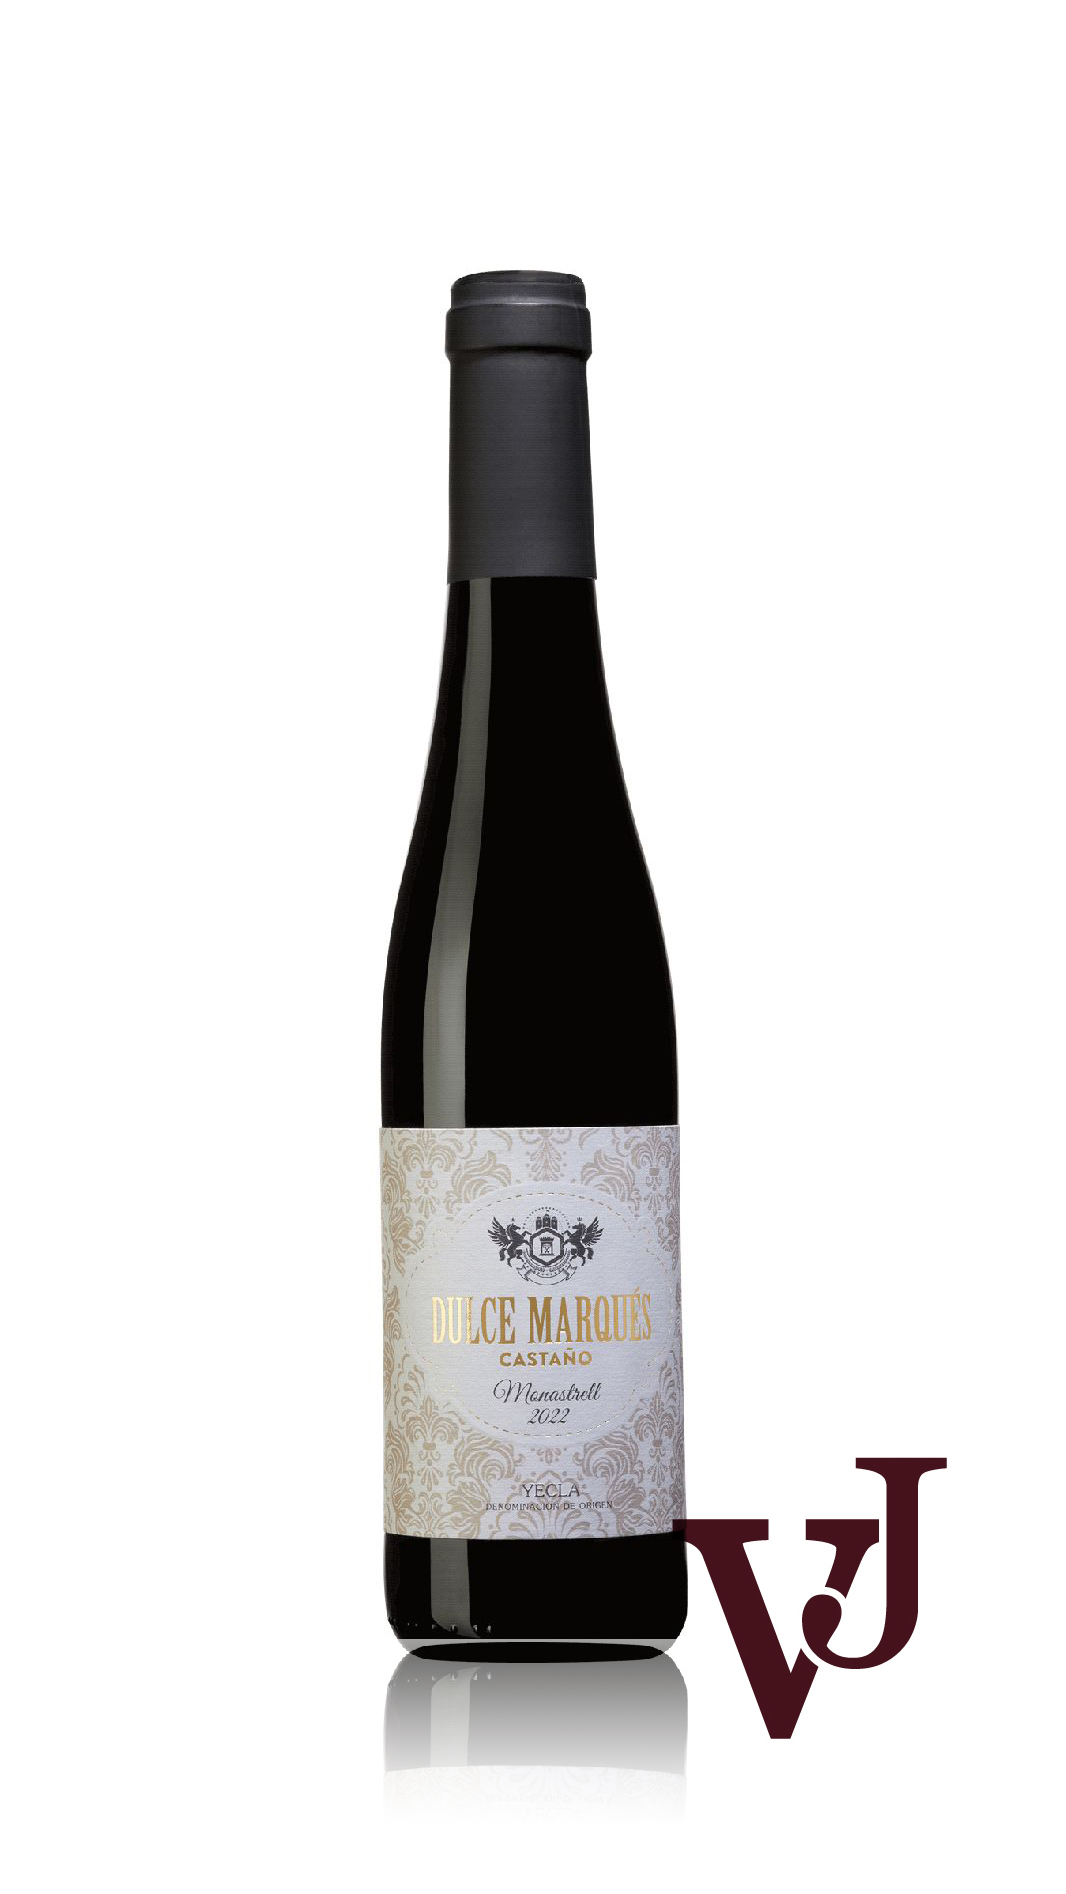 Övrigt Vin - Dulce Marqués Castaño Monastrell 2022 artikel nummer 242702 från producenten Bodegas Castaño från området Spanien.